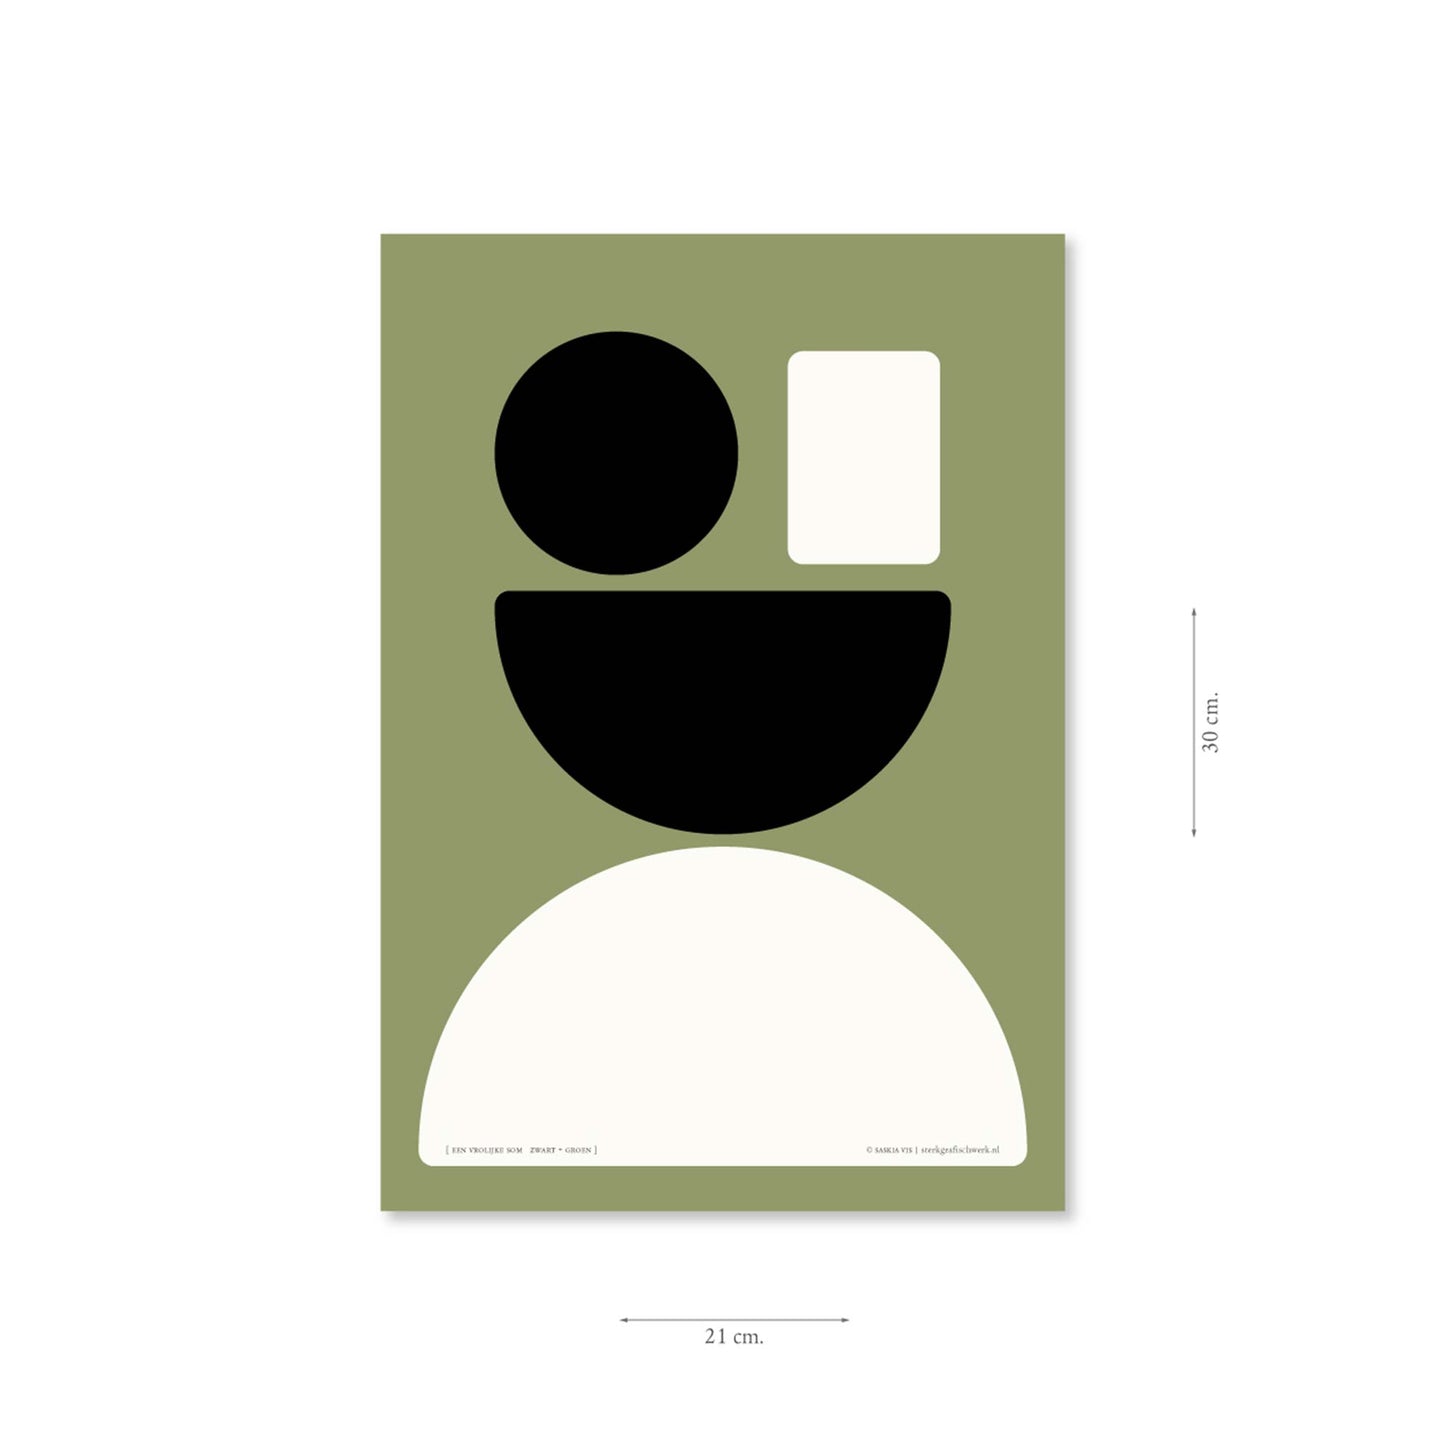 Productafbeelding, poster "een vrolijke som zwart+groen", met aanduiding van het formaat erop weergegeven 21 x 30 cm